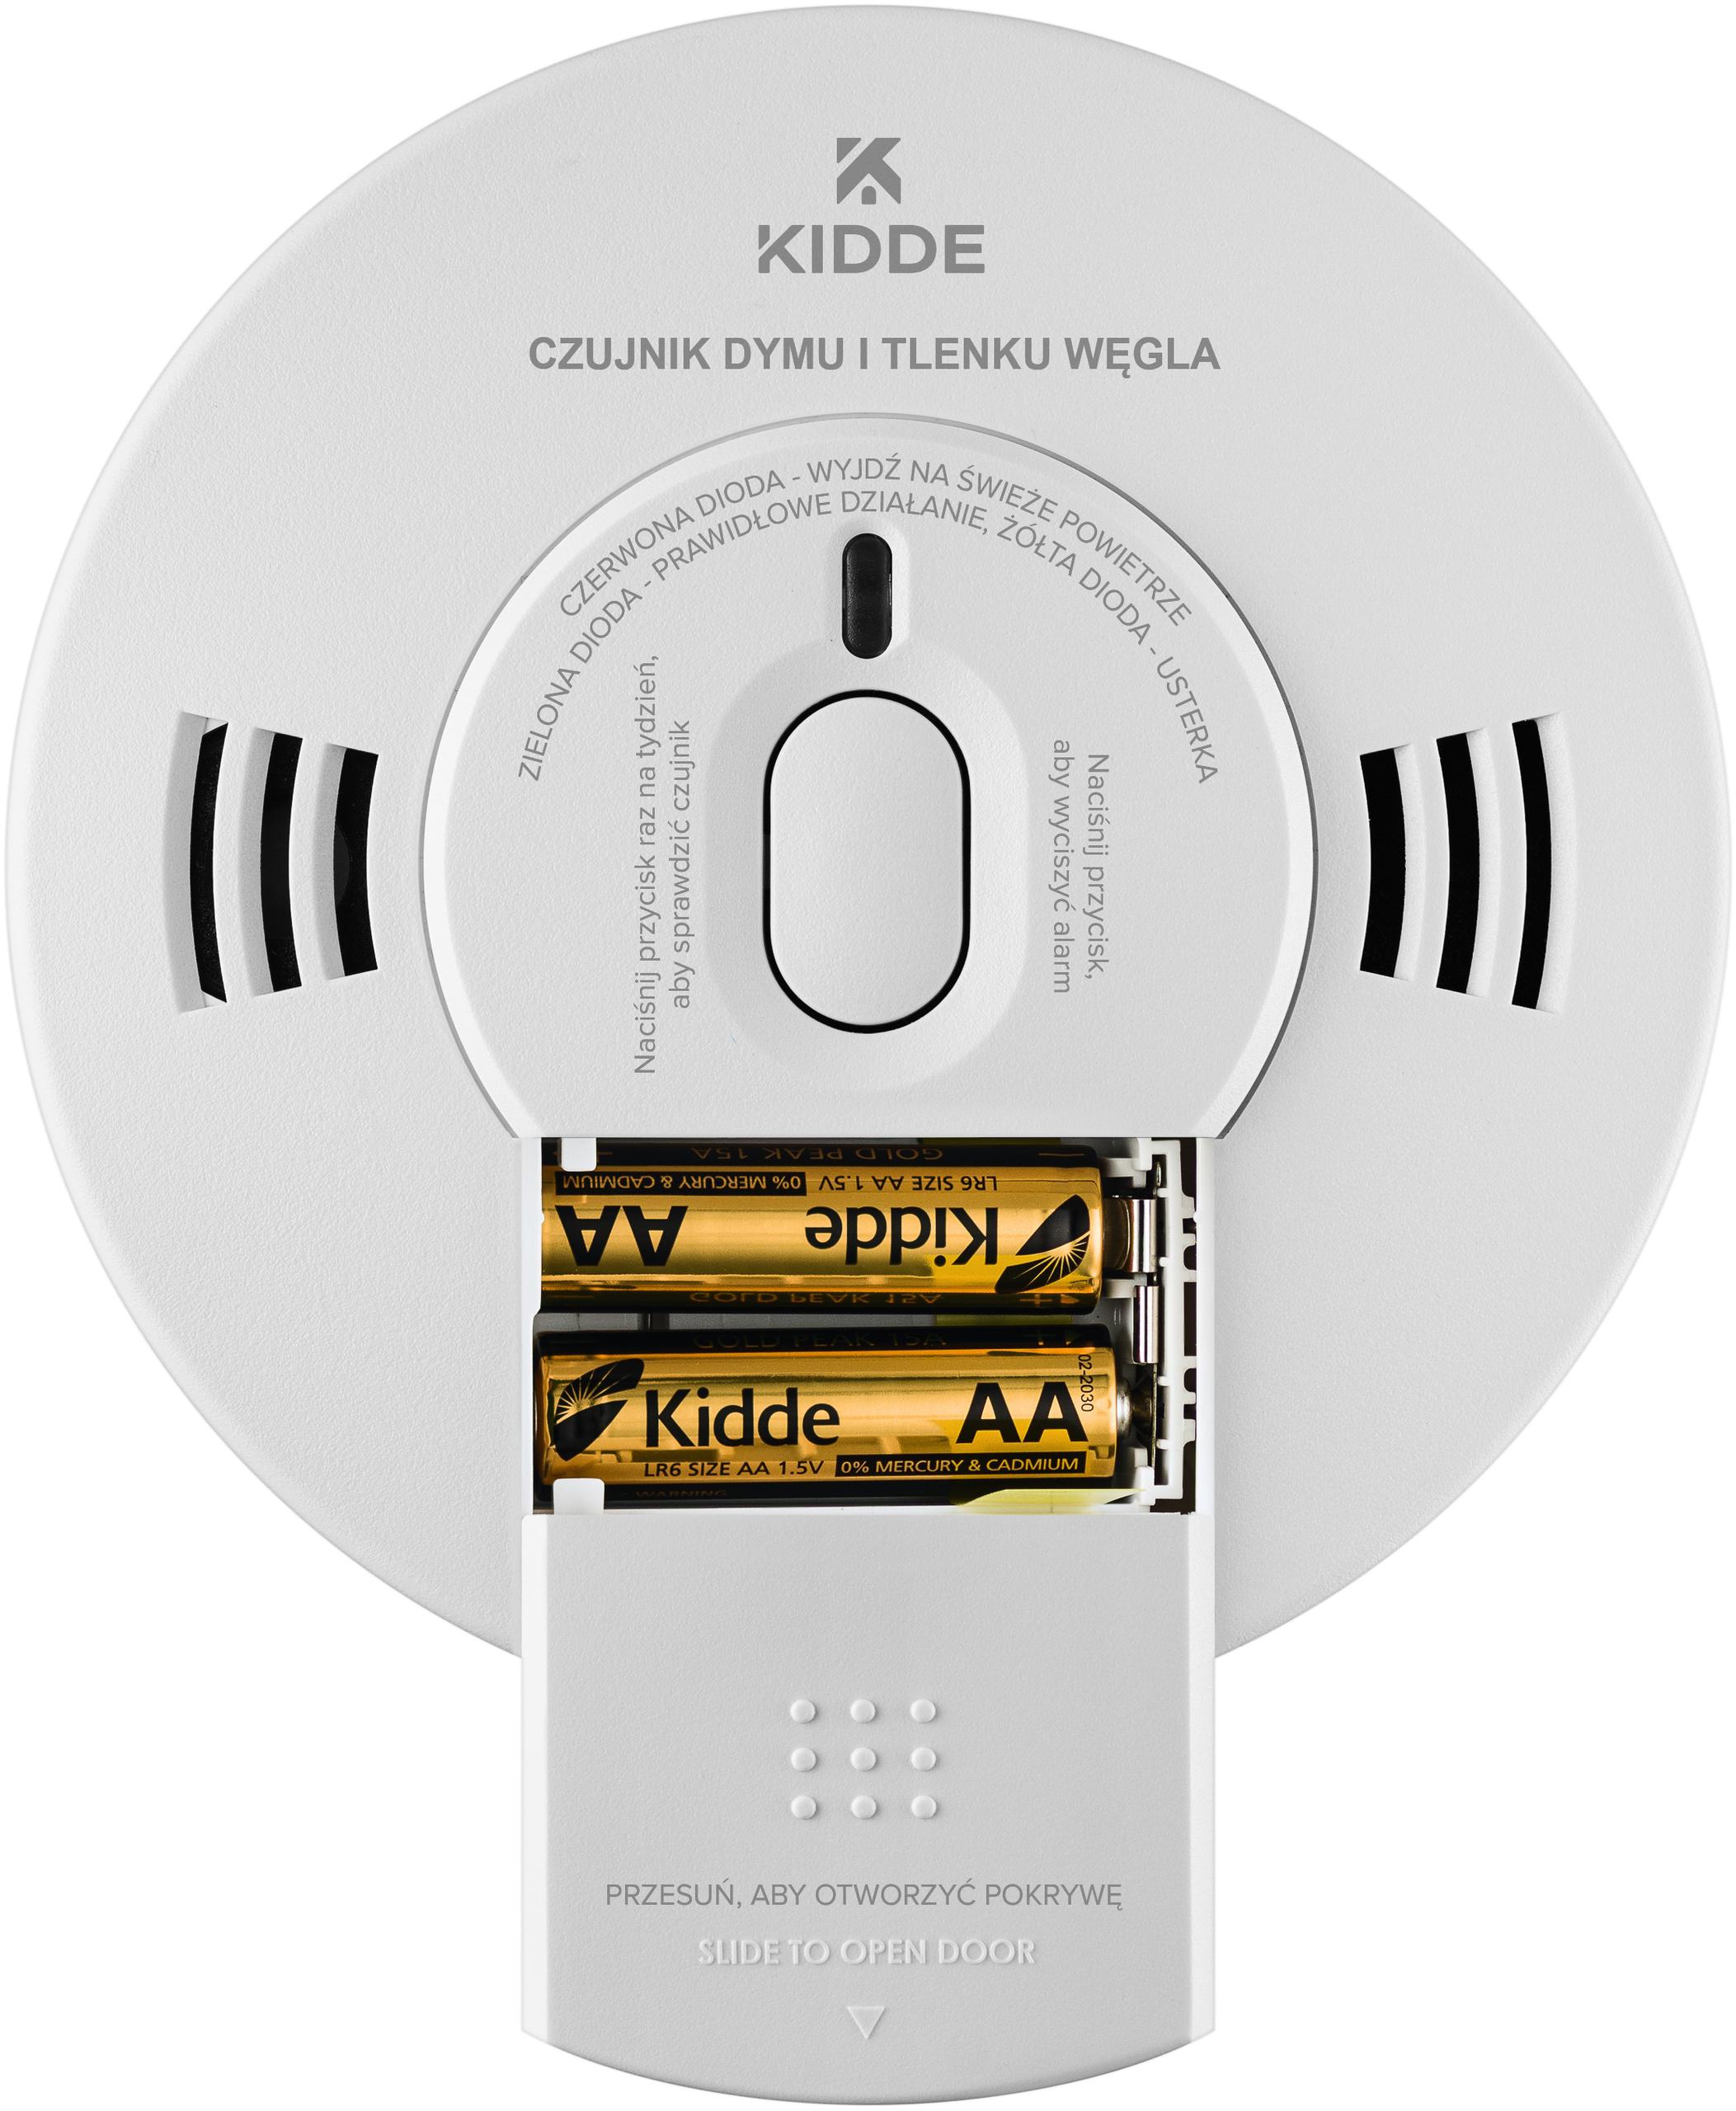 Dualny czujnik dymu i tlenku węgla Kidde K10SCO - podsumowanie cech, funkcji i zalet bateryjnej czujki alarmowej: